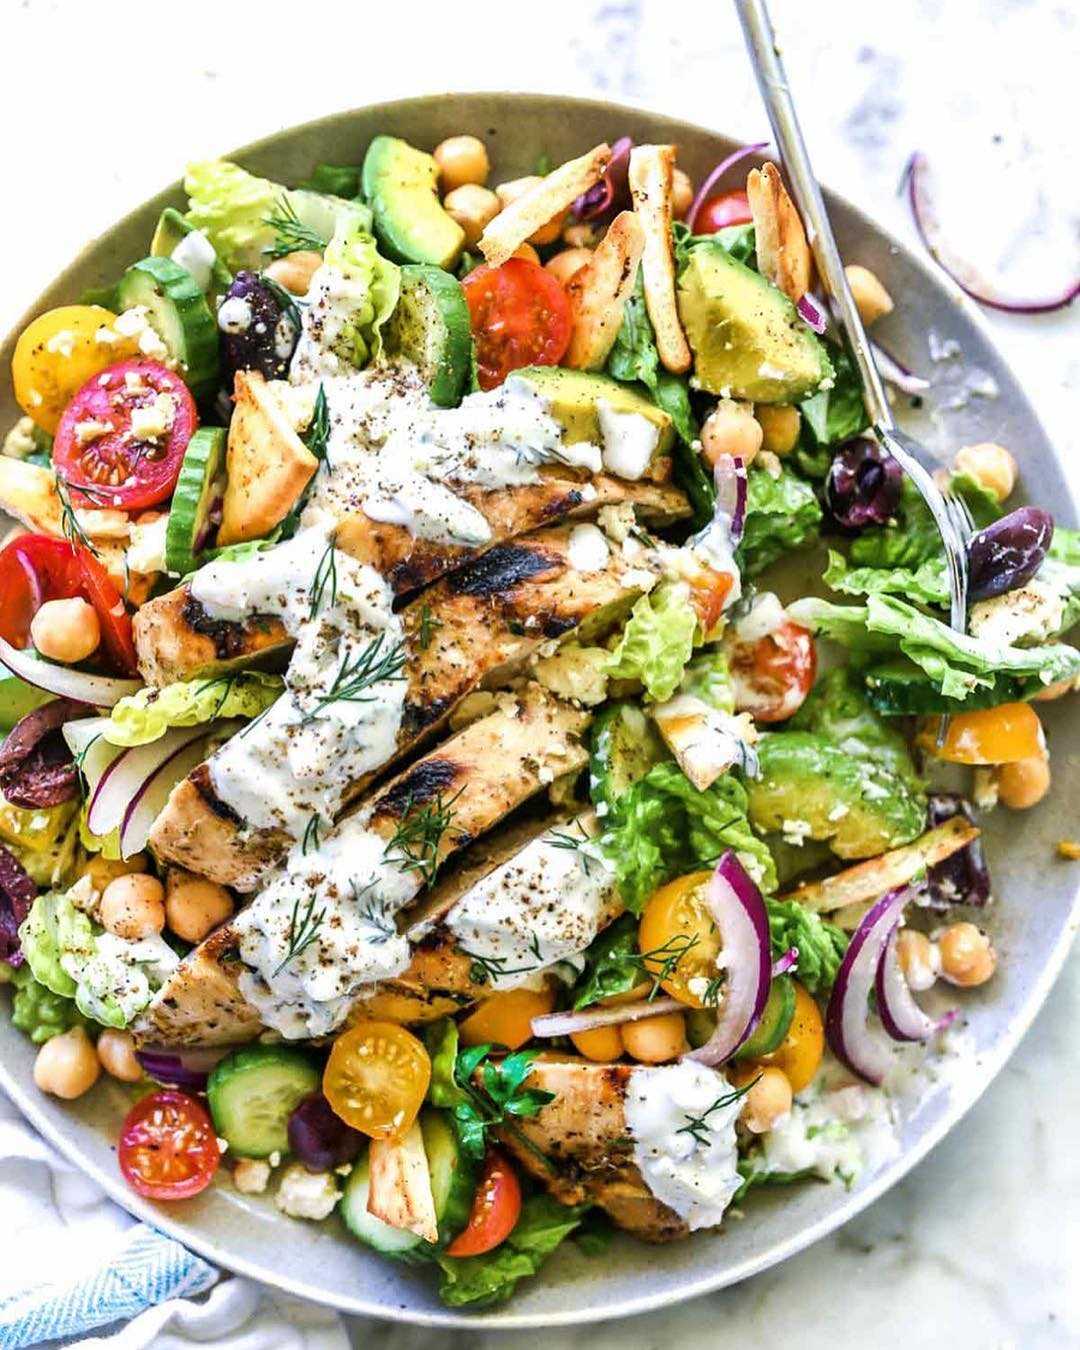 Греческий салат с курицей